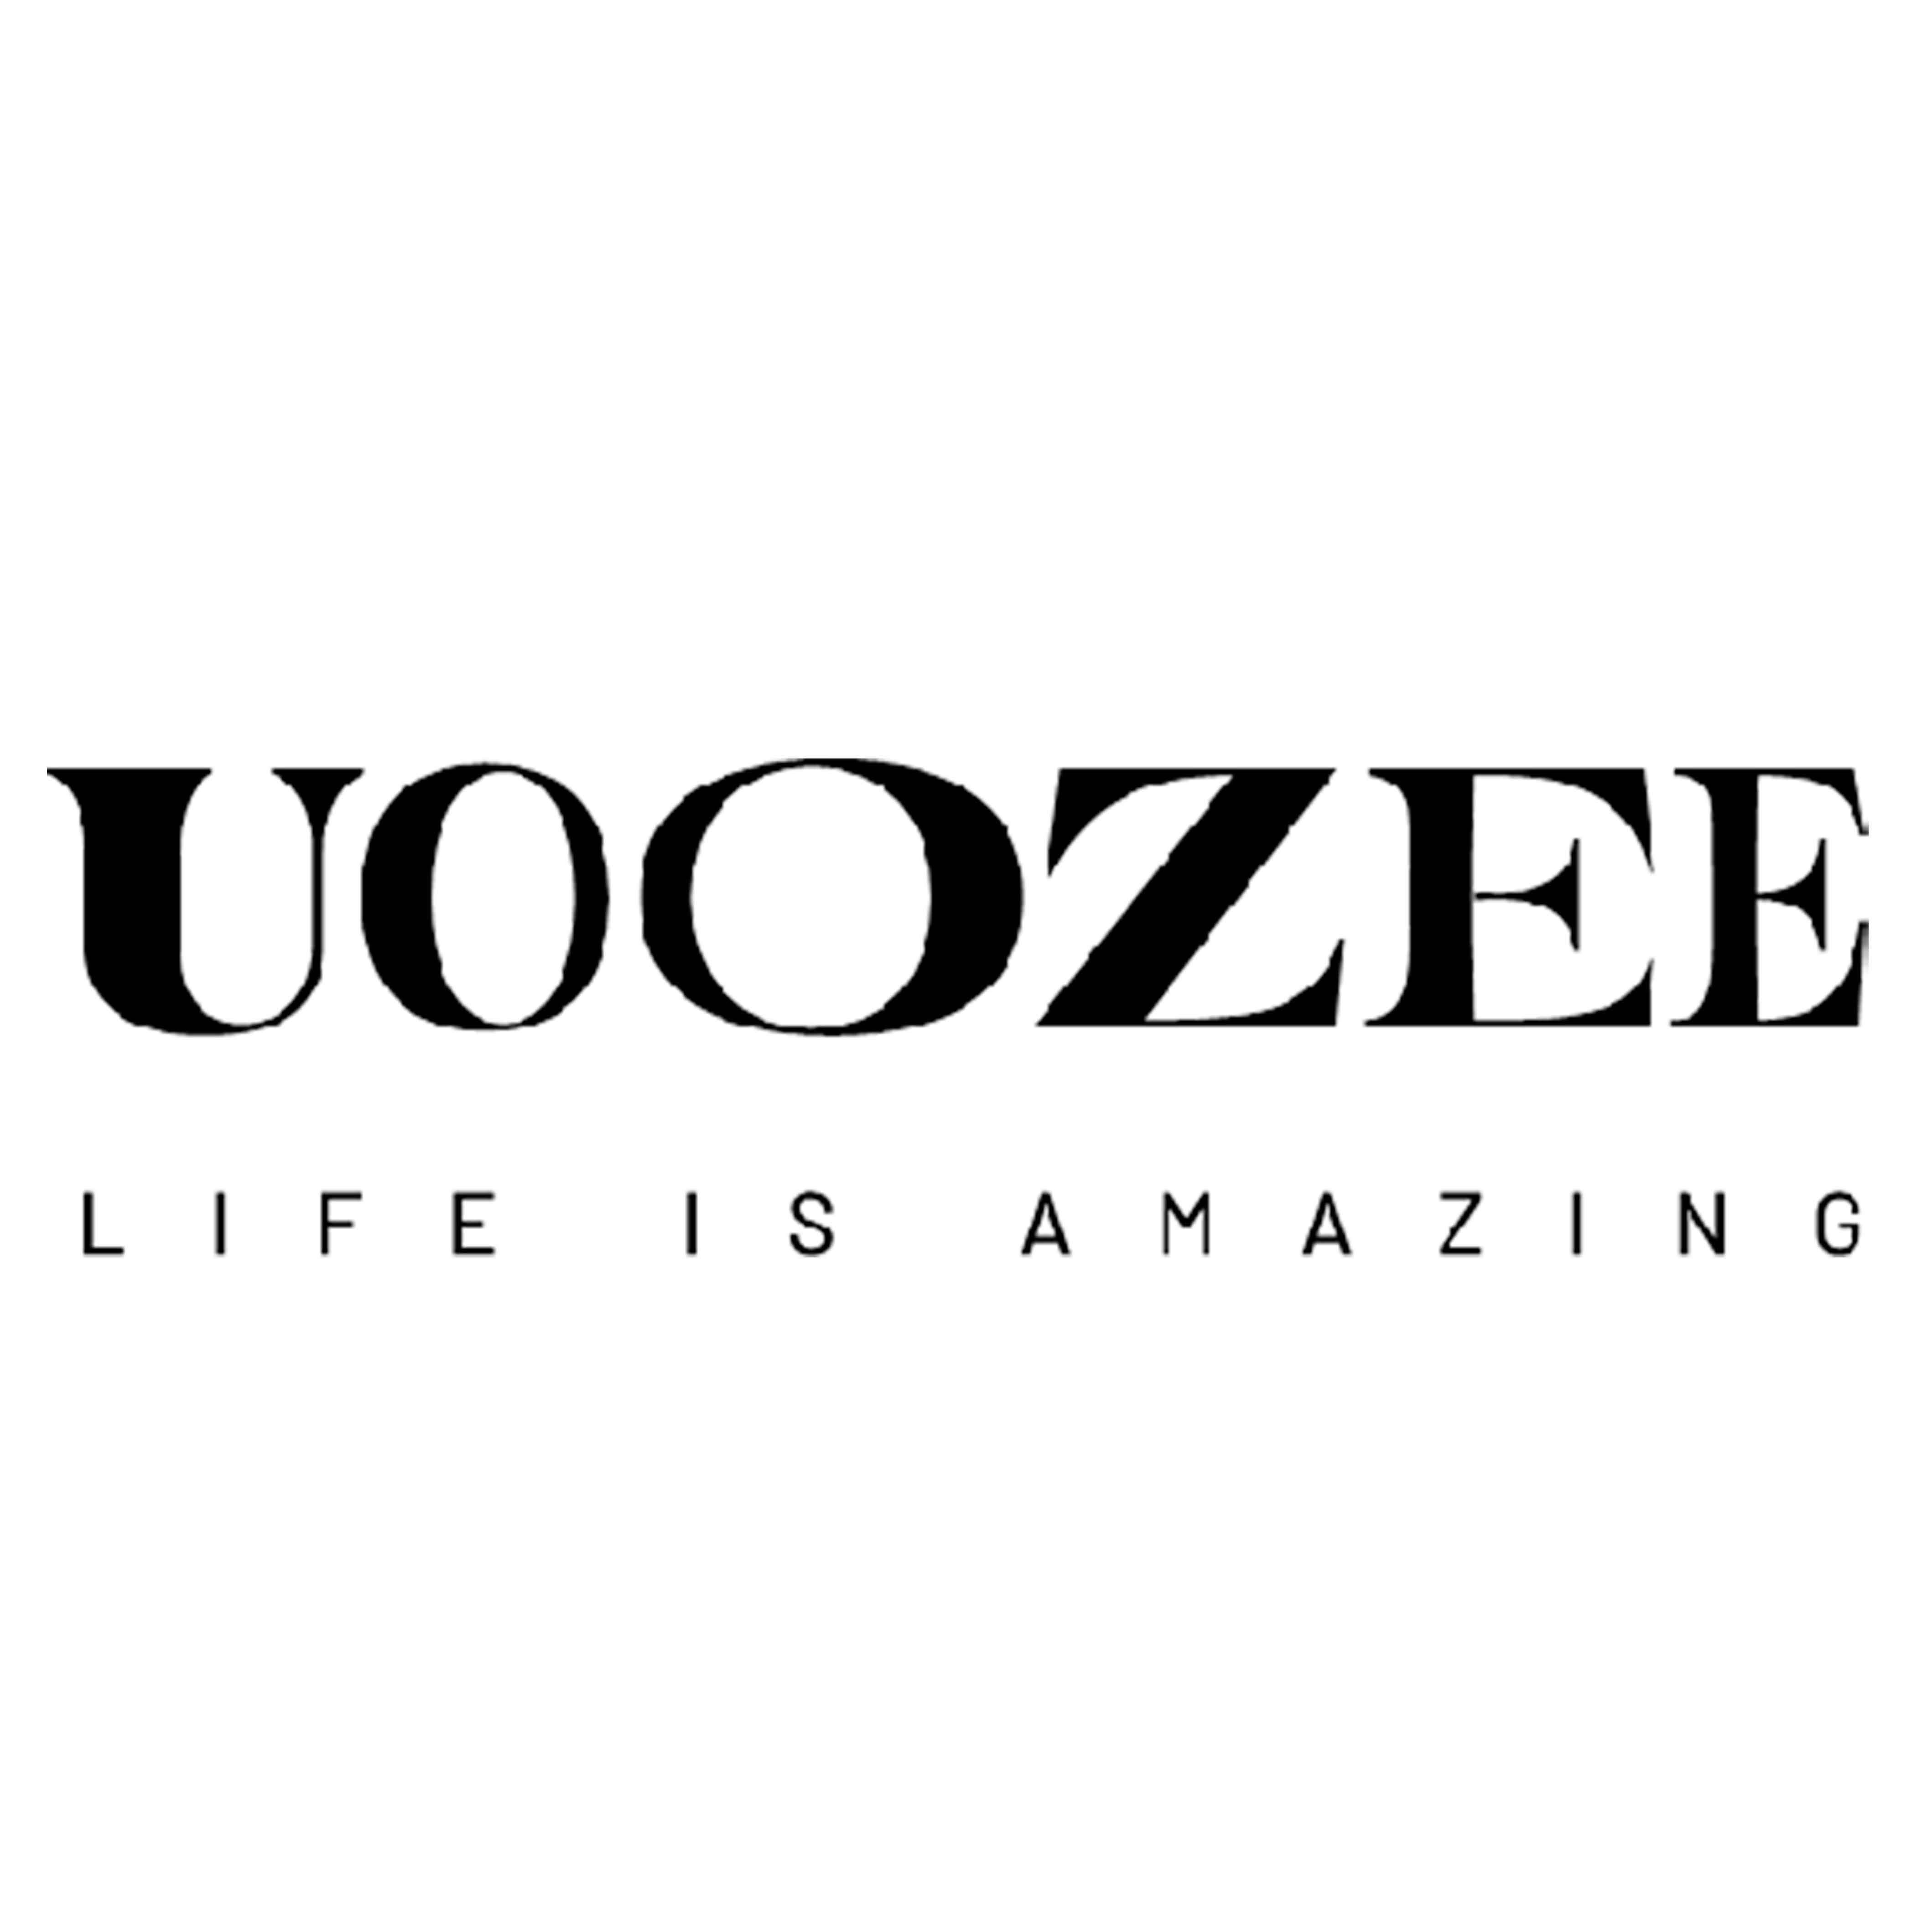 Uoozee coupon codes